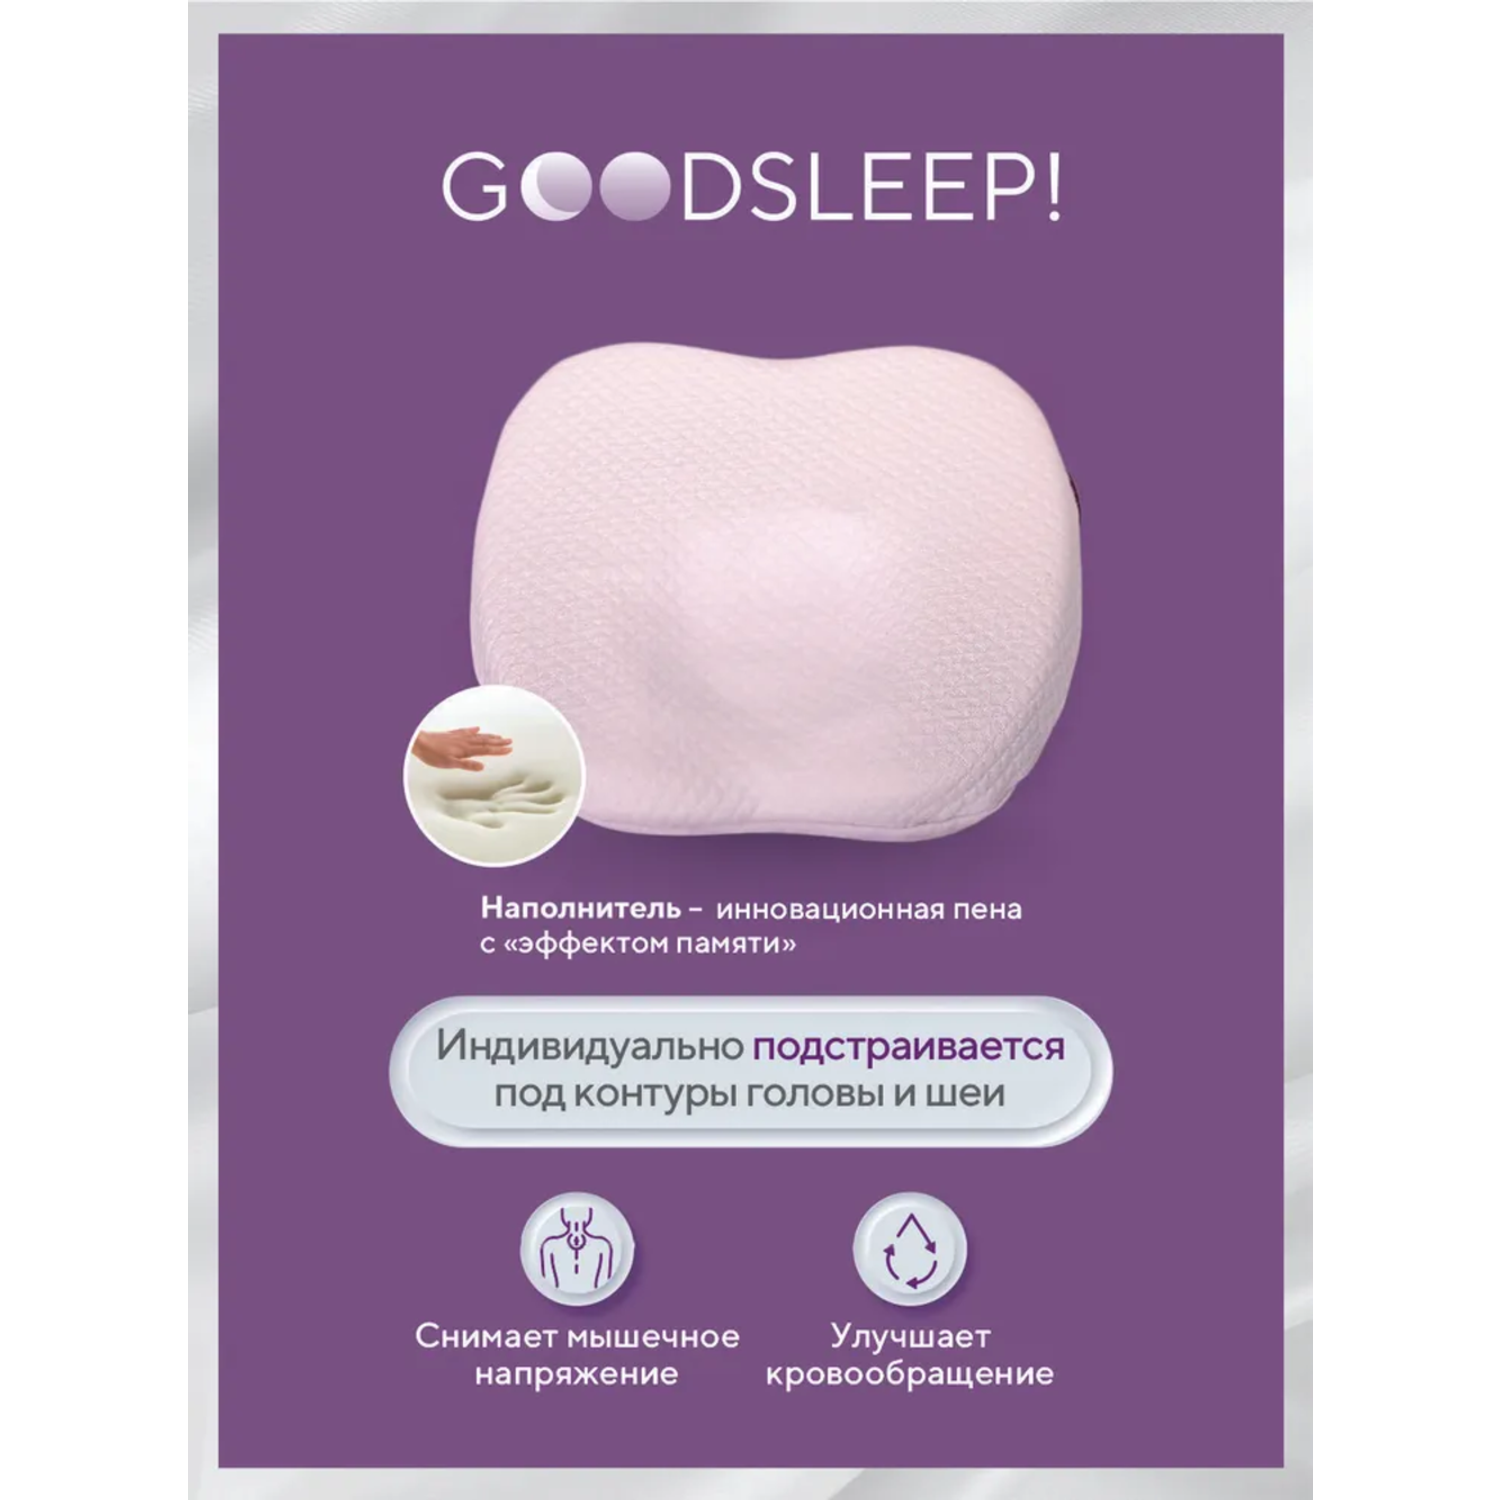 Ортопедическая подушка Goodsleep! с эффектом памяти под голову для детей от 1 до 18 мес - фото 1